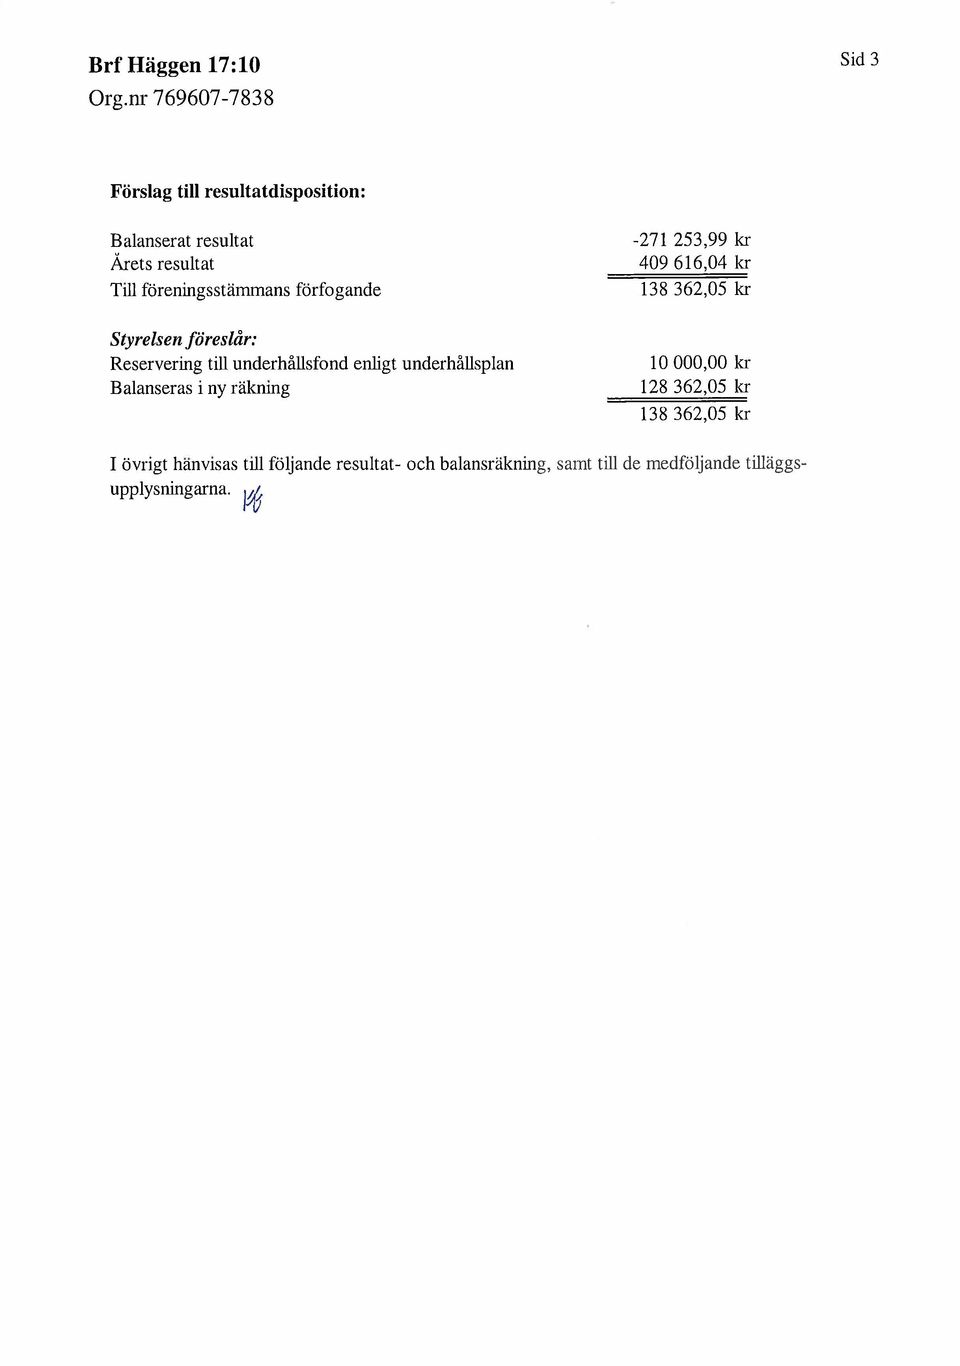 underhållsfond enlgt underhållsplan Balanseras i ny räknig 10000,00 kr 128 362,05 kr 138362,05 kr I